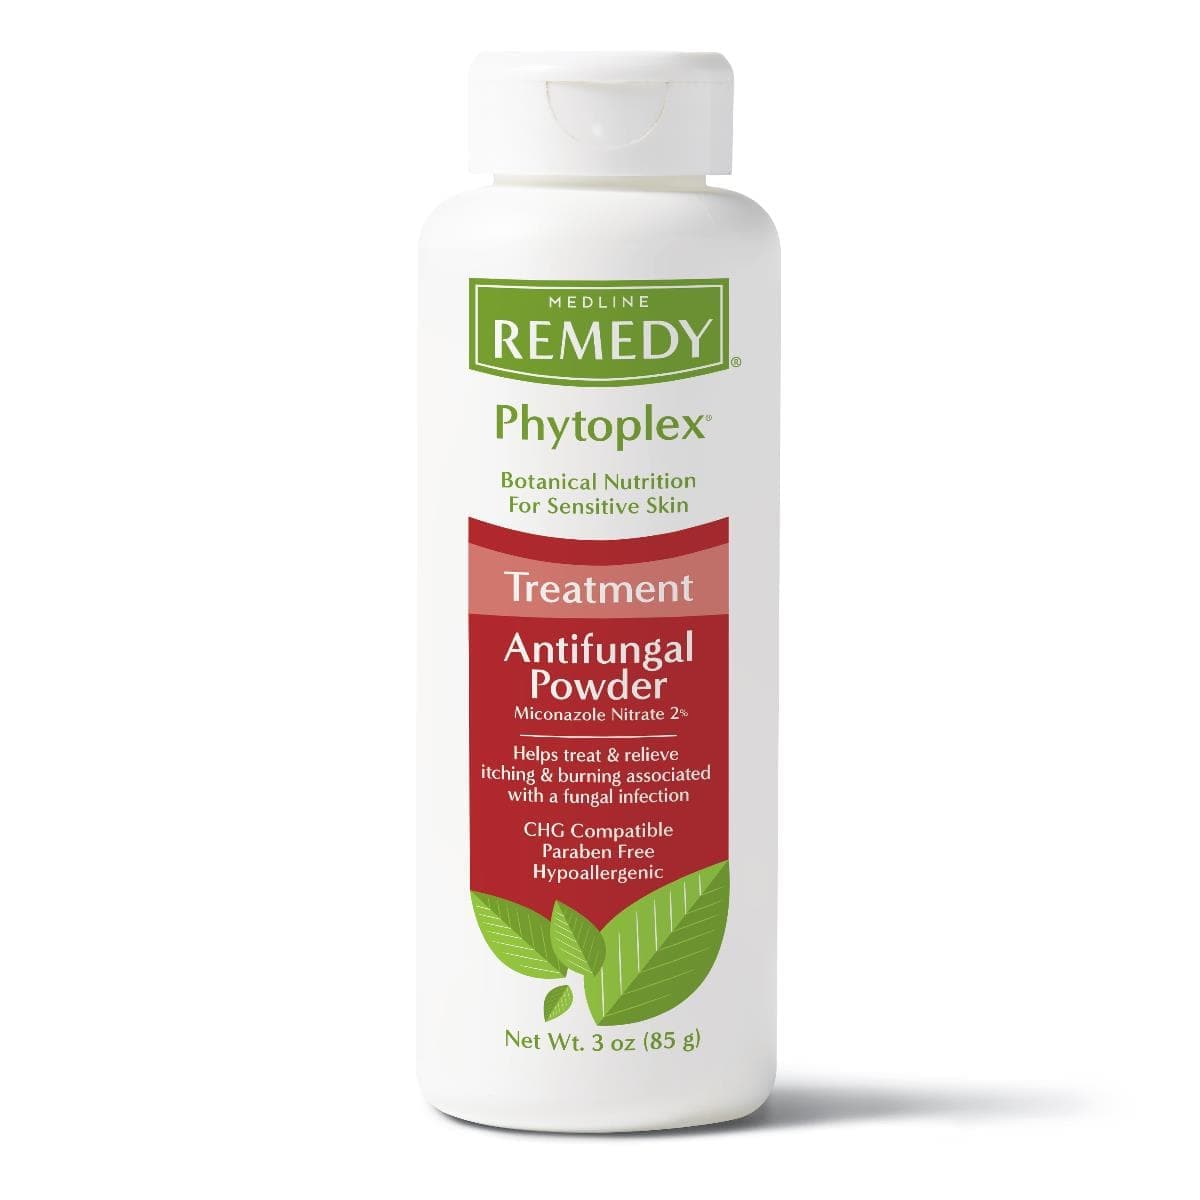 Medline Medline Remedy Phytoplex Antifungal Powder MSC092603H